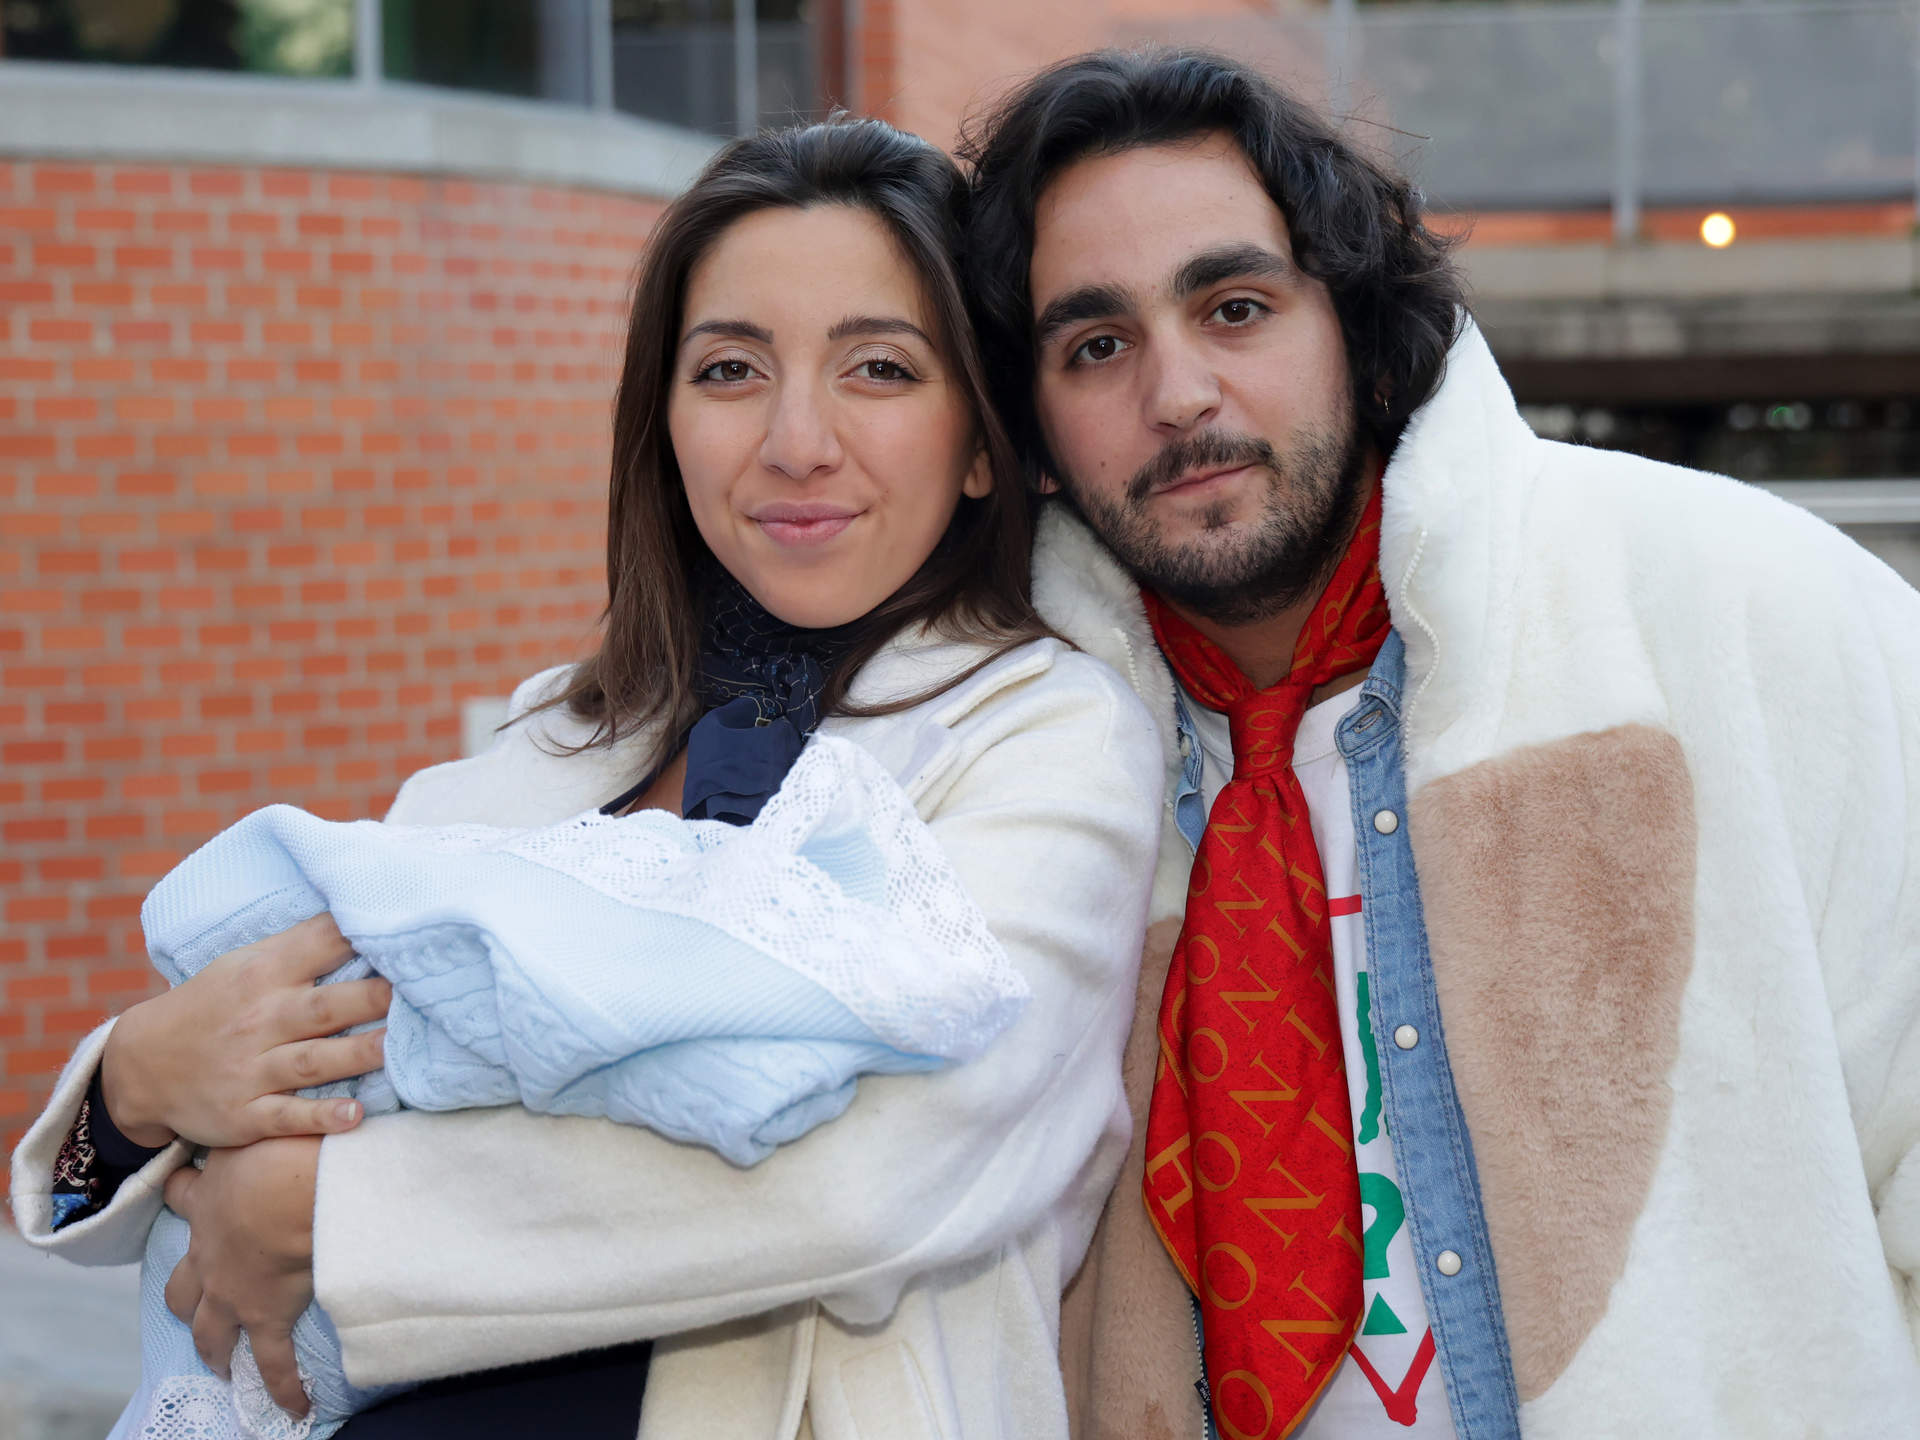 Lucía Fernanda Carmona e Ismael de la Rosa presentan a su primer hijo a la salida del hospital